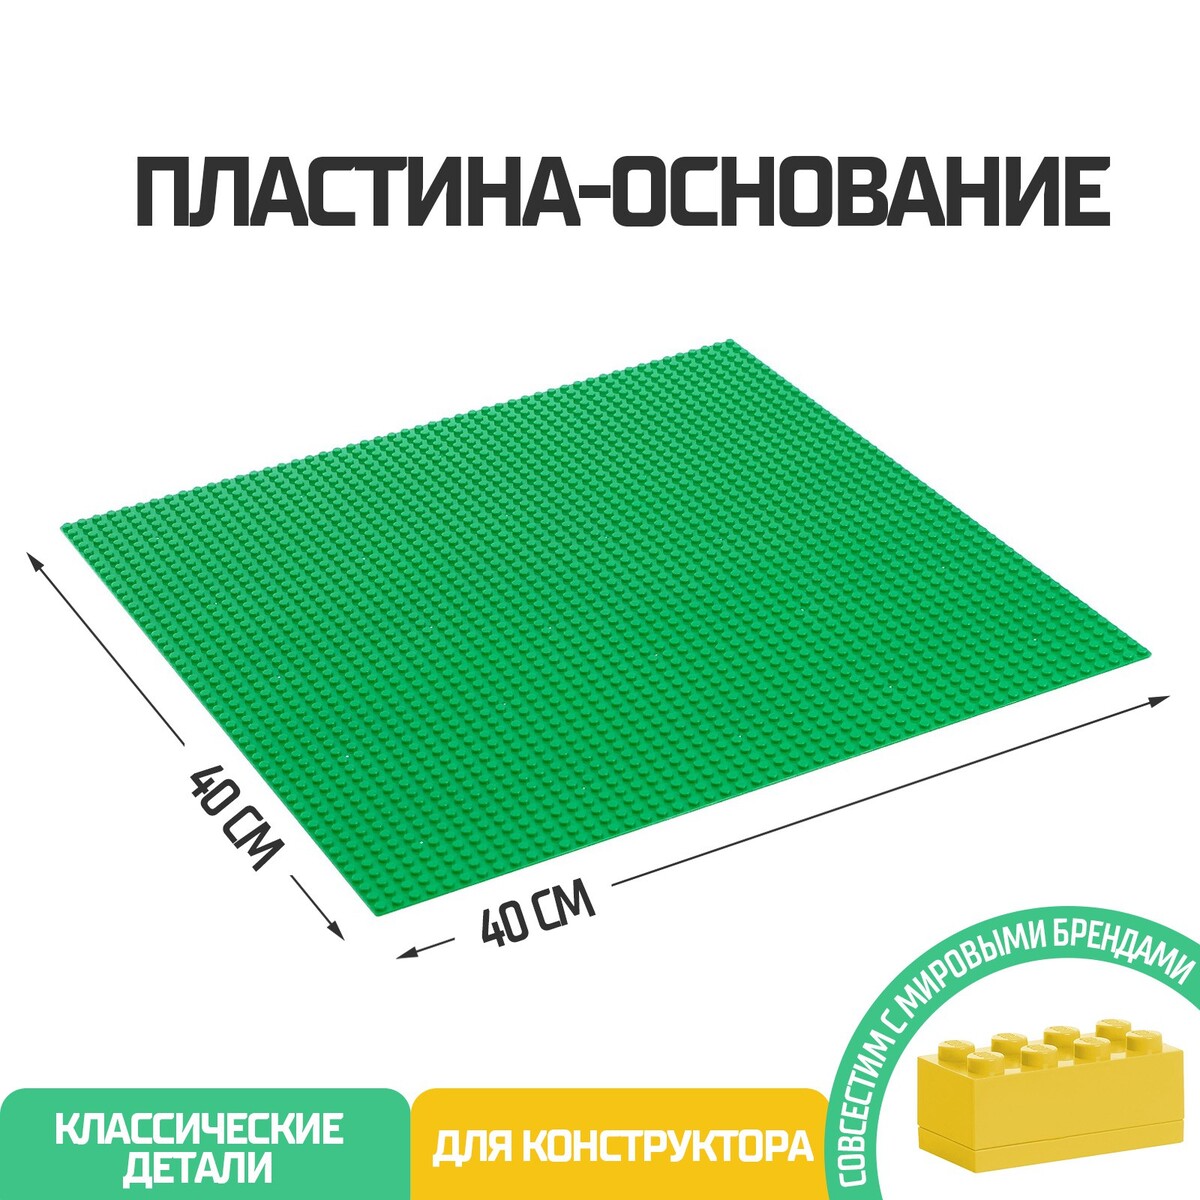 Пластина-основание для конструктора, 40 х 40 см, цвет зеленый пластина основание для конструктора 25 5 × 12 5 см серый